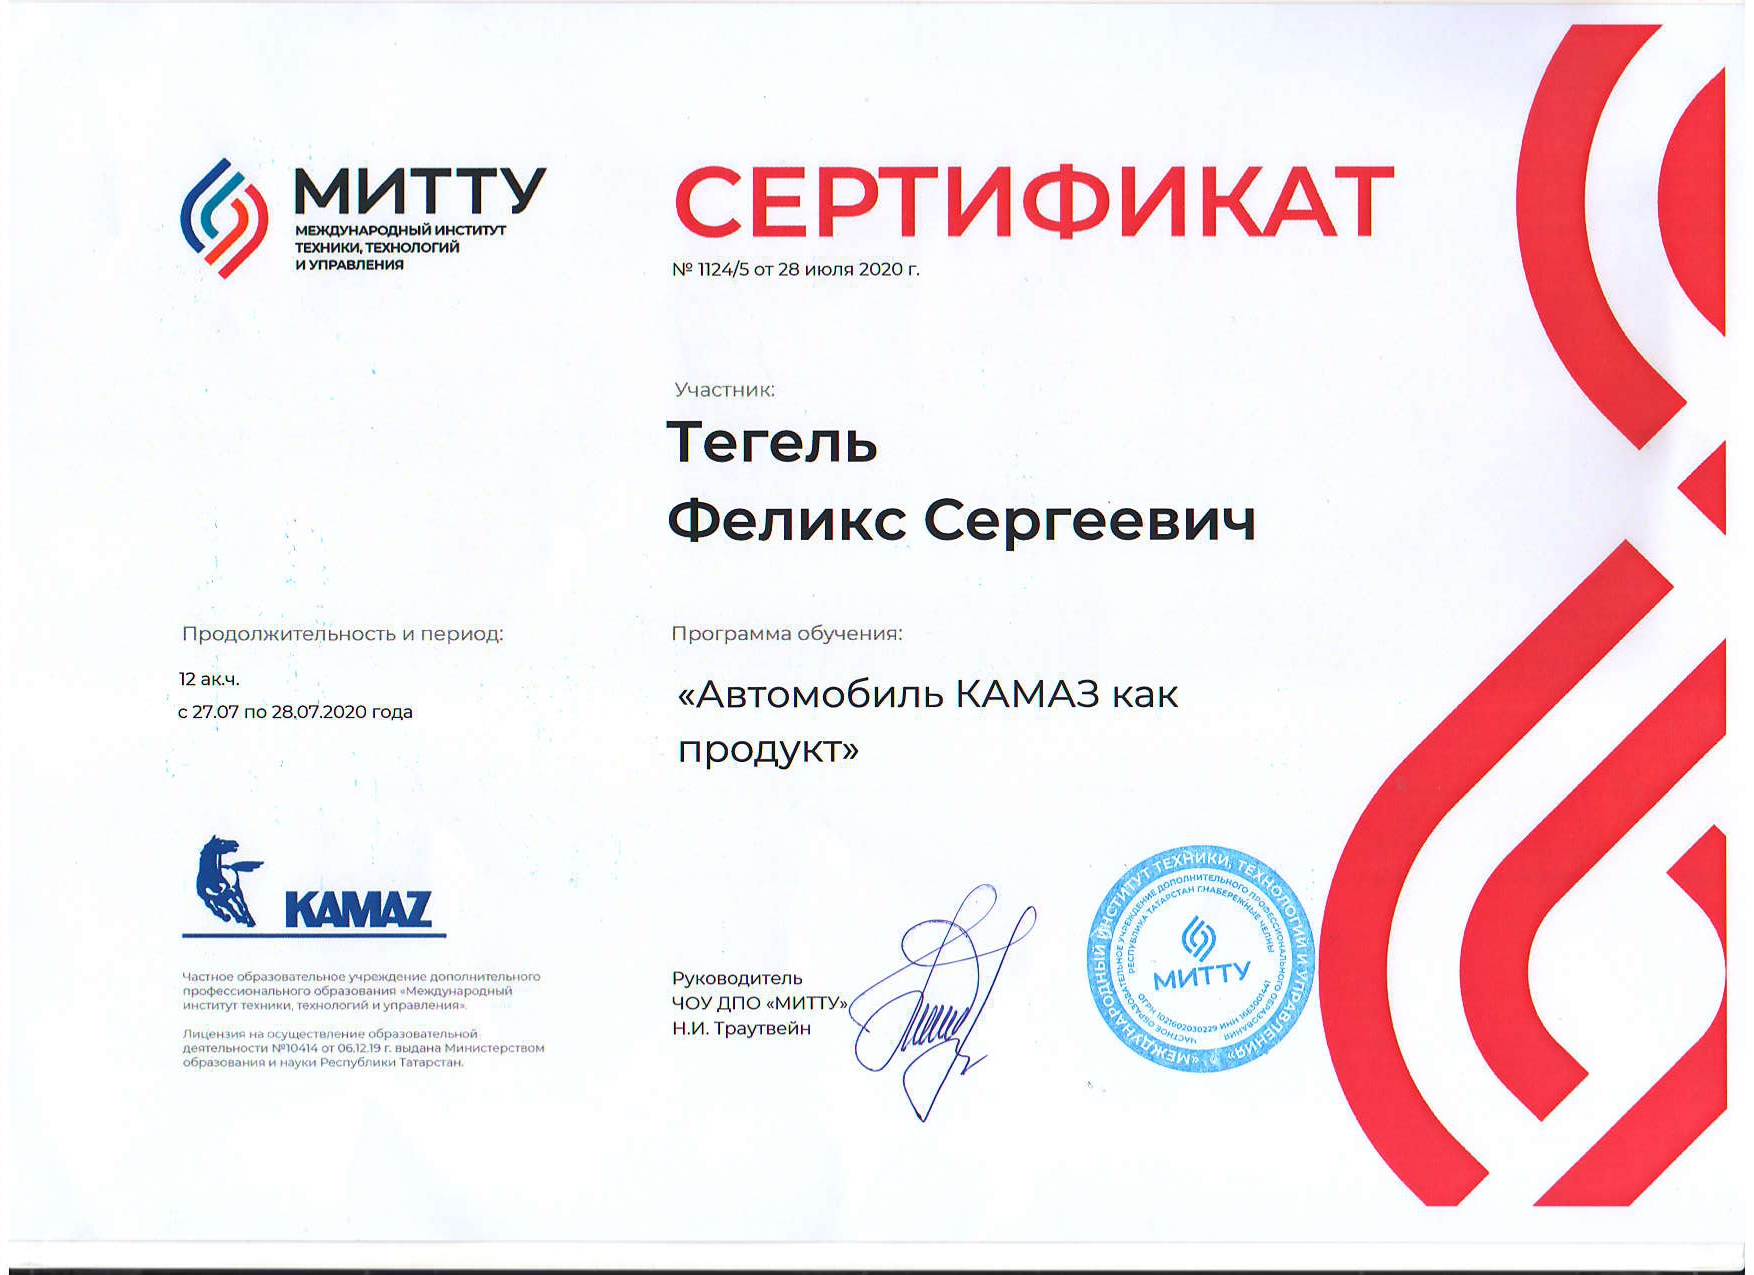 Сертификат Камаз как продукт Тегель